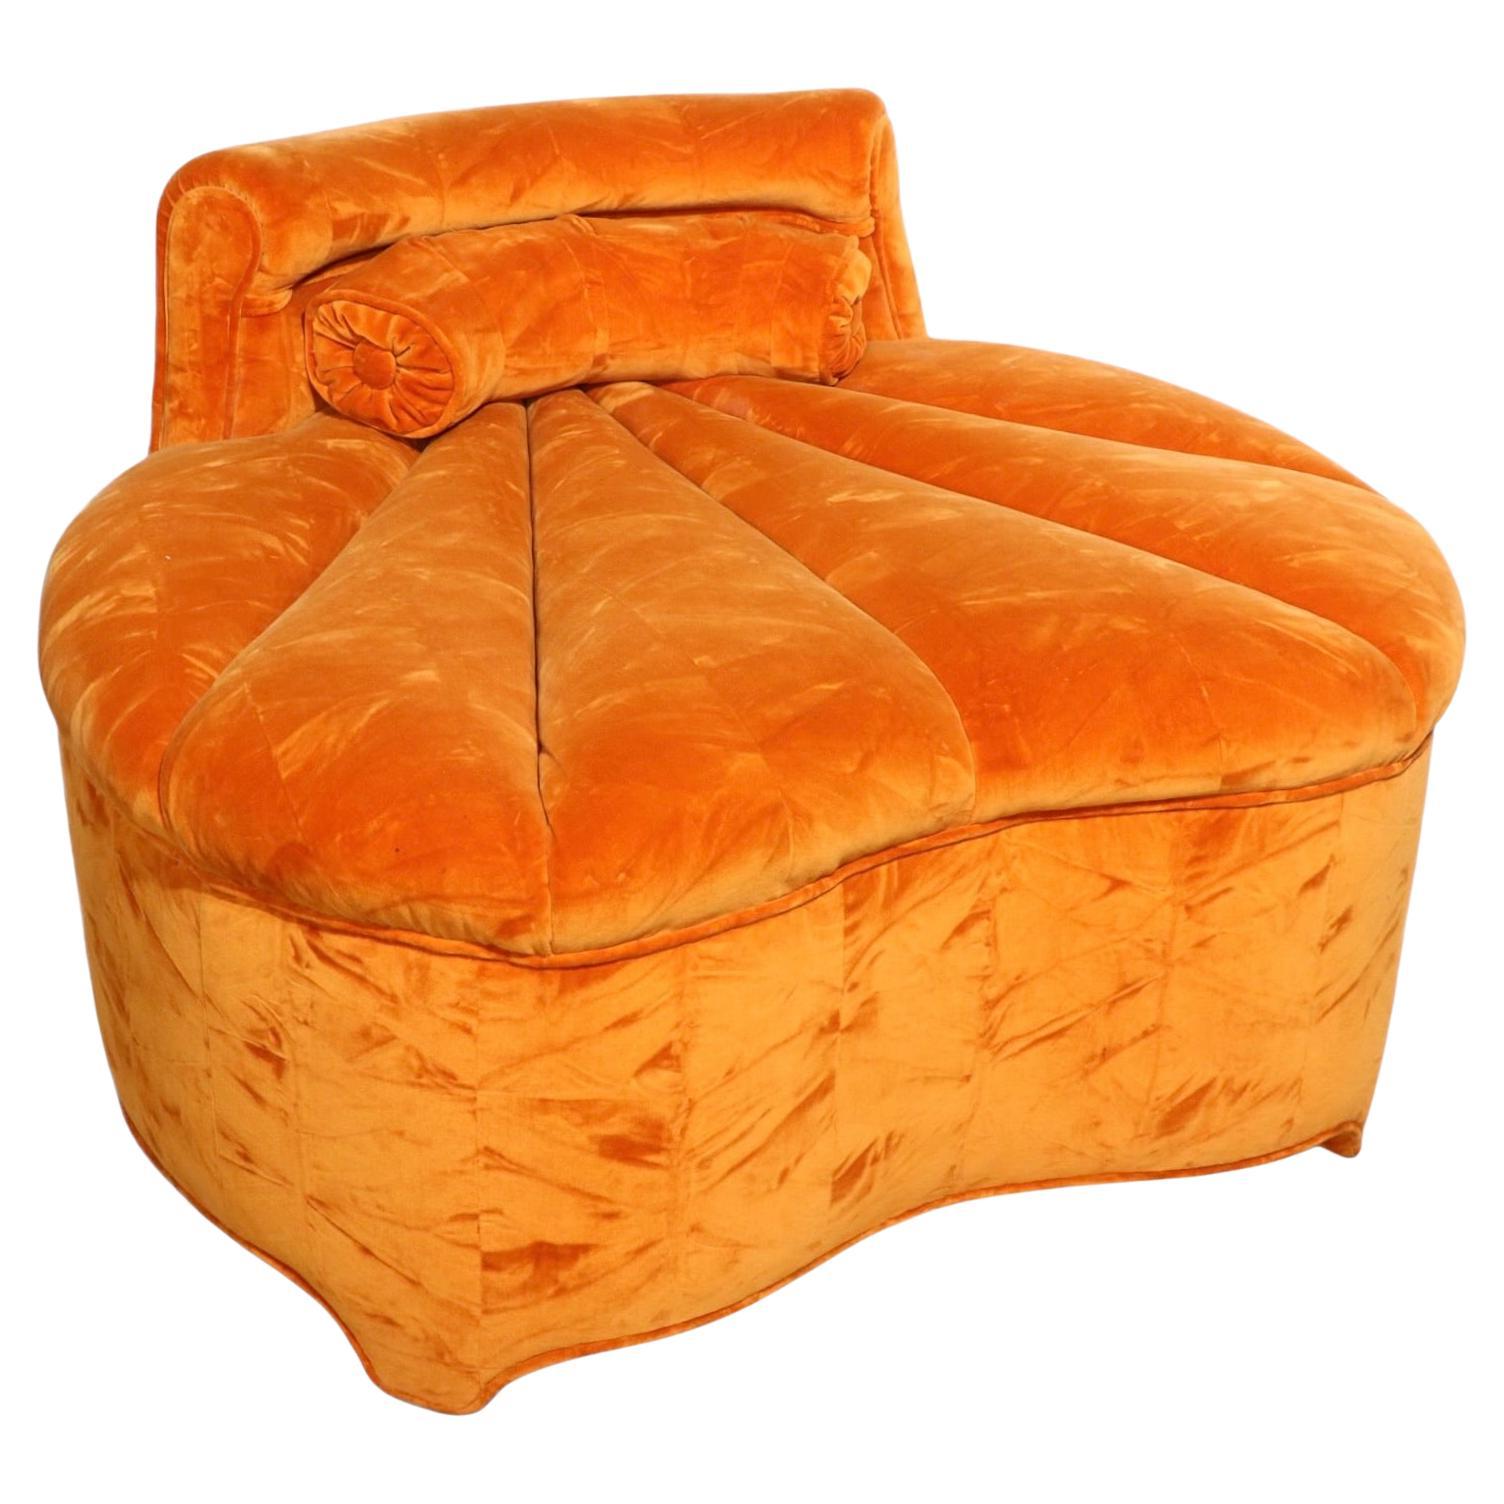 Schicker, modischer Lounge-, Pantoffel- und Boudoir-Sessel mit orangefarbener Allover-Polsterung. Der Stuhl verfügt über einen kanalisierten Sitz mit strahlenförmigen Linien, einen gewundenen und sexy geschwungenen Rahmen und ein geschwungenes